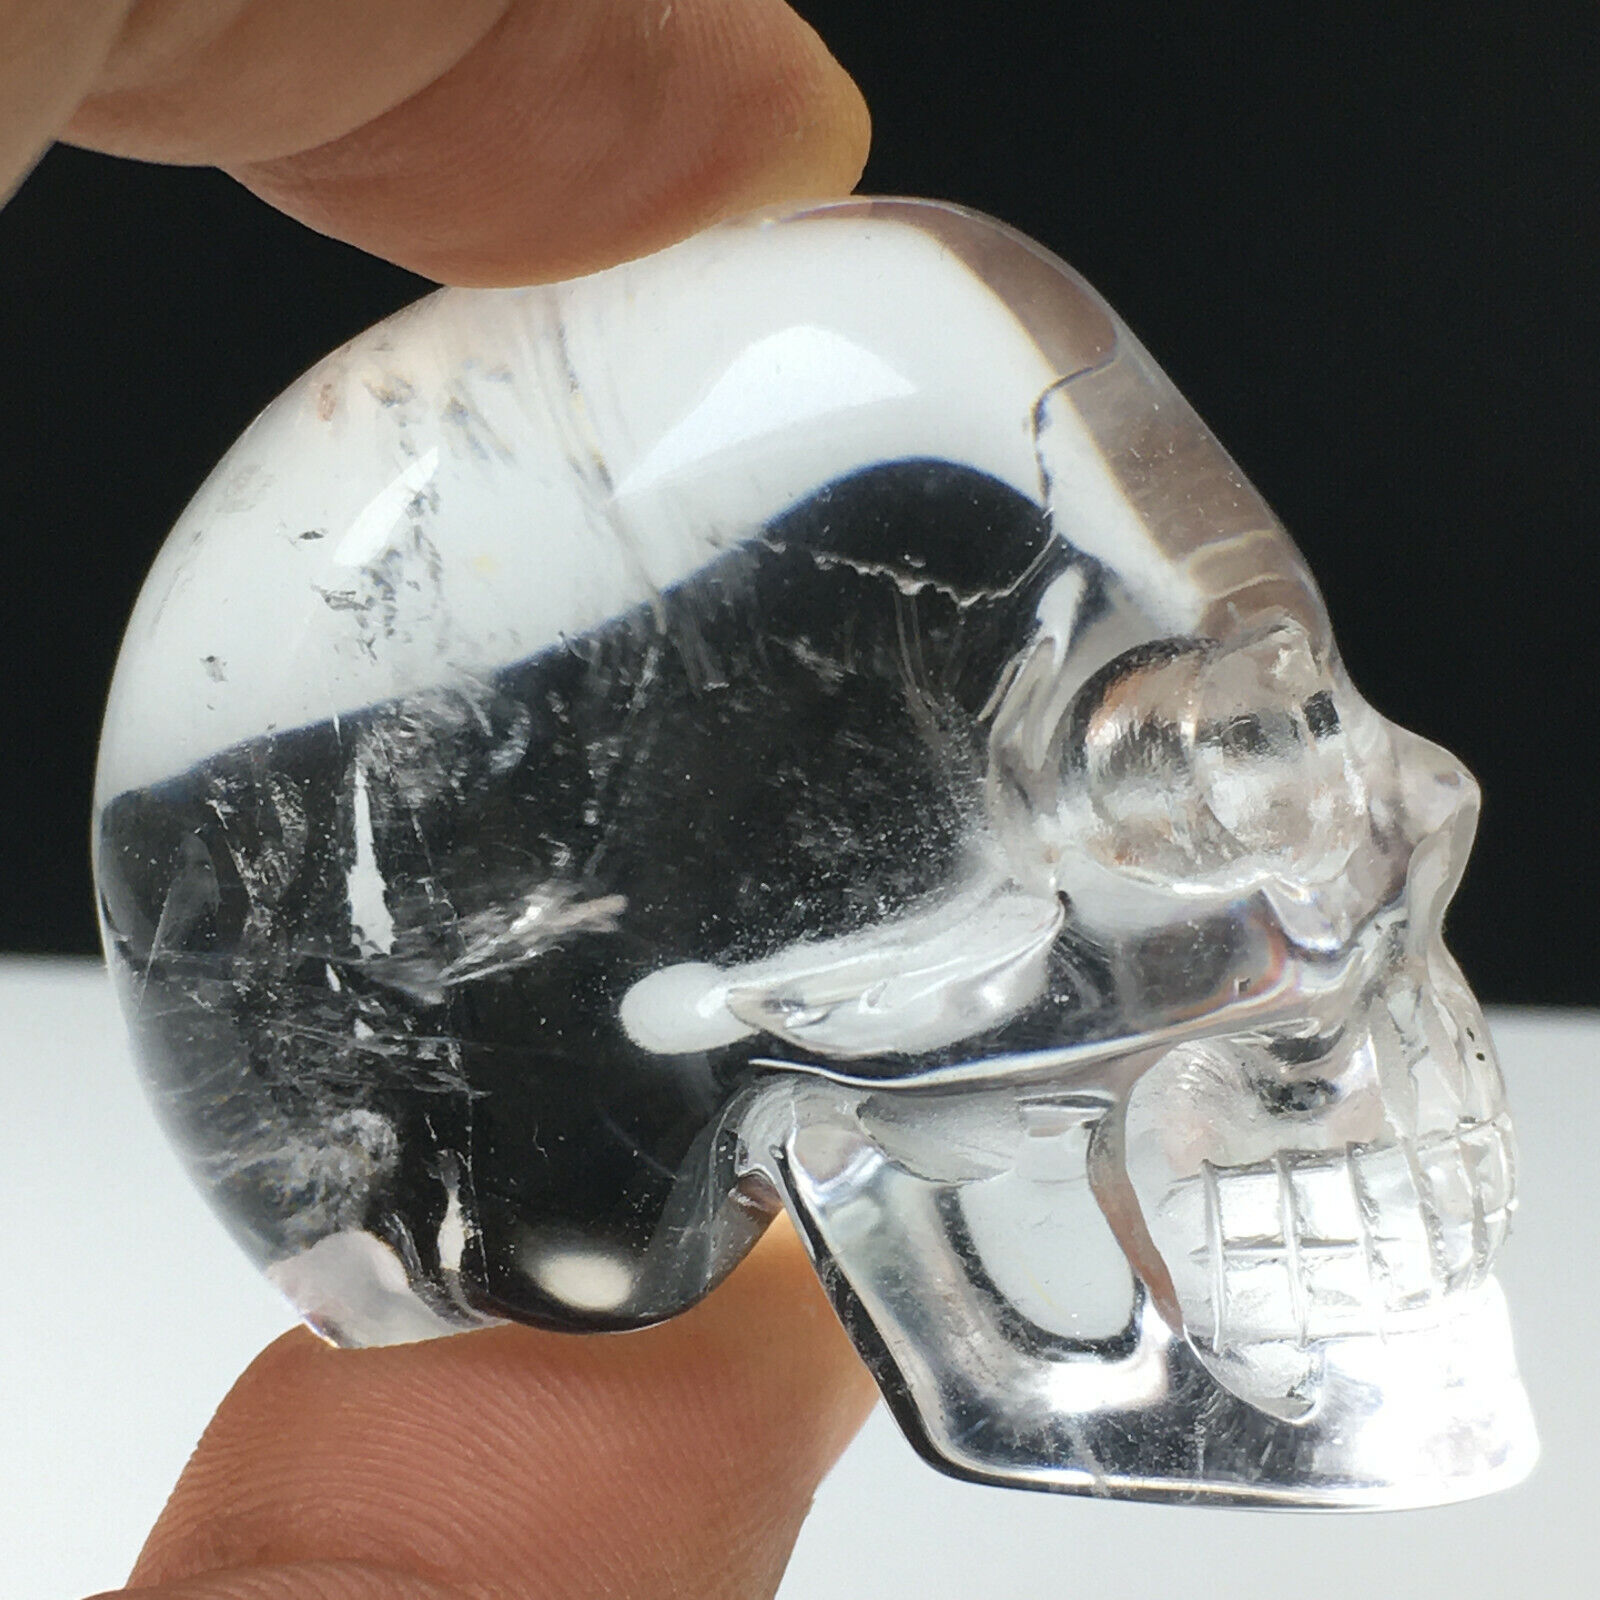 Rare！67g  Awesome Natural Crystal  Quartz Skull  Healing  Carving  